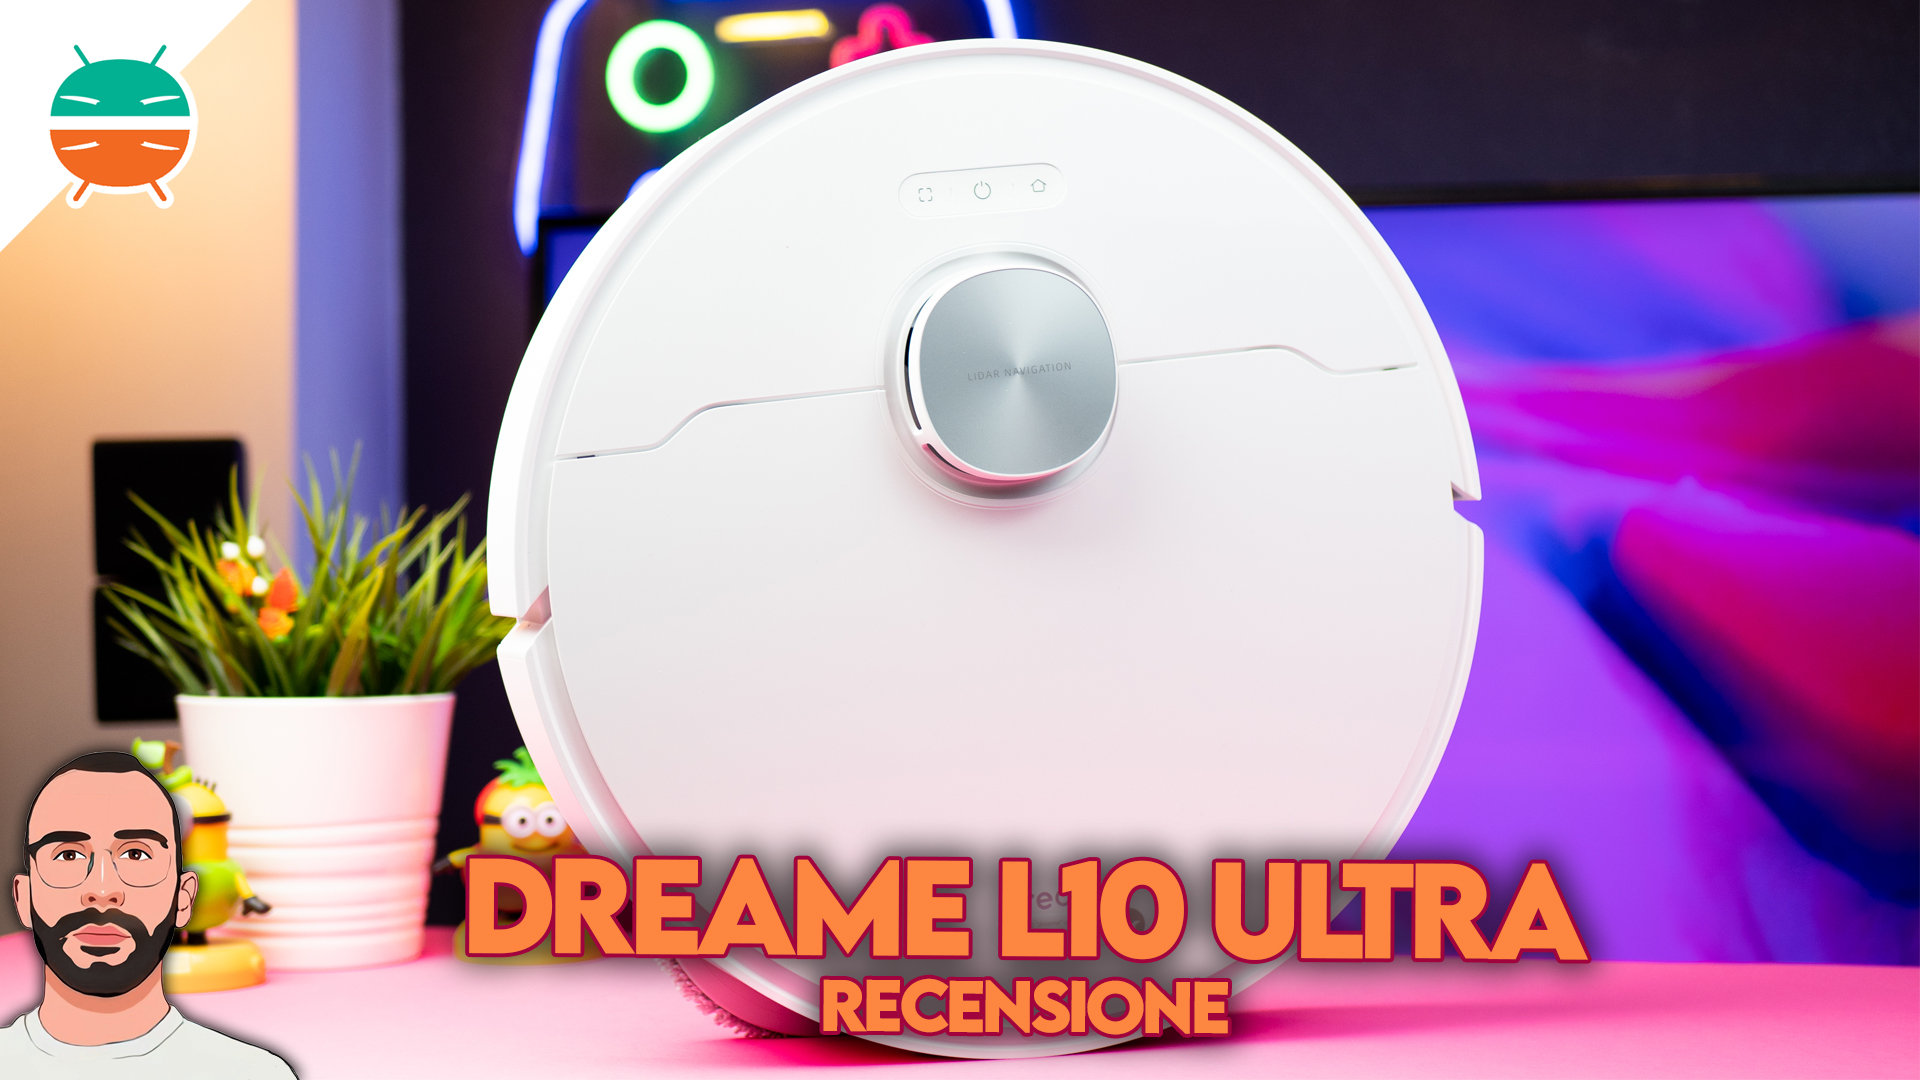 Dreame L10 Ultra : nous avons testé le robot aspirateur laveur